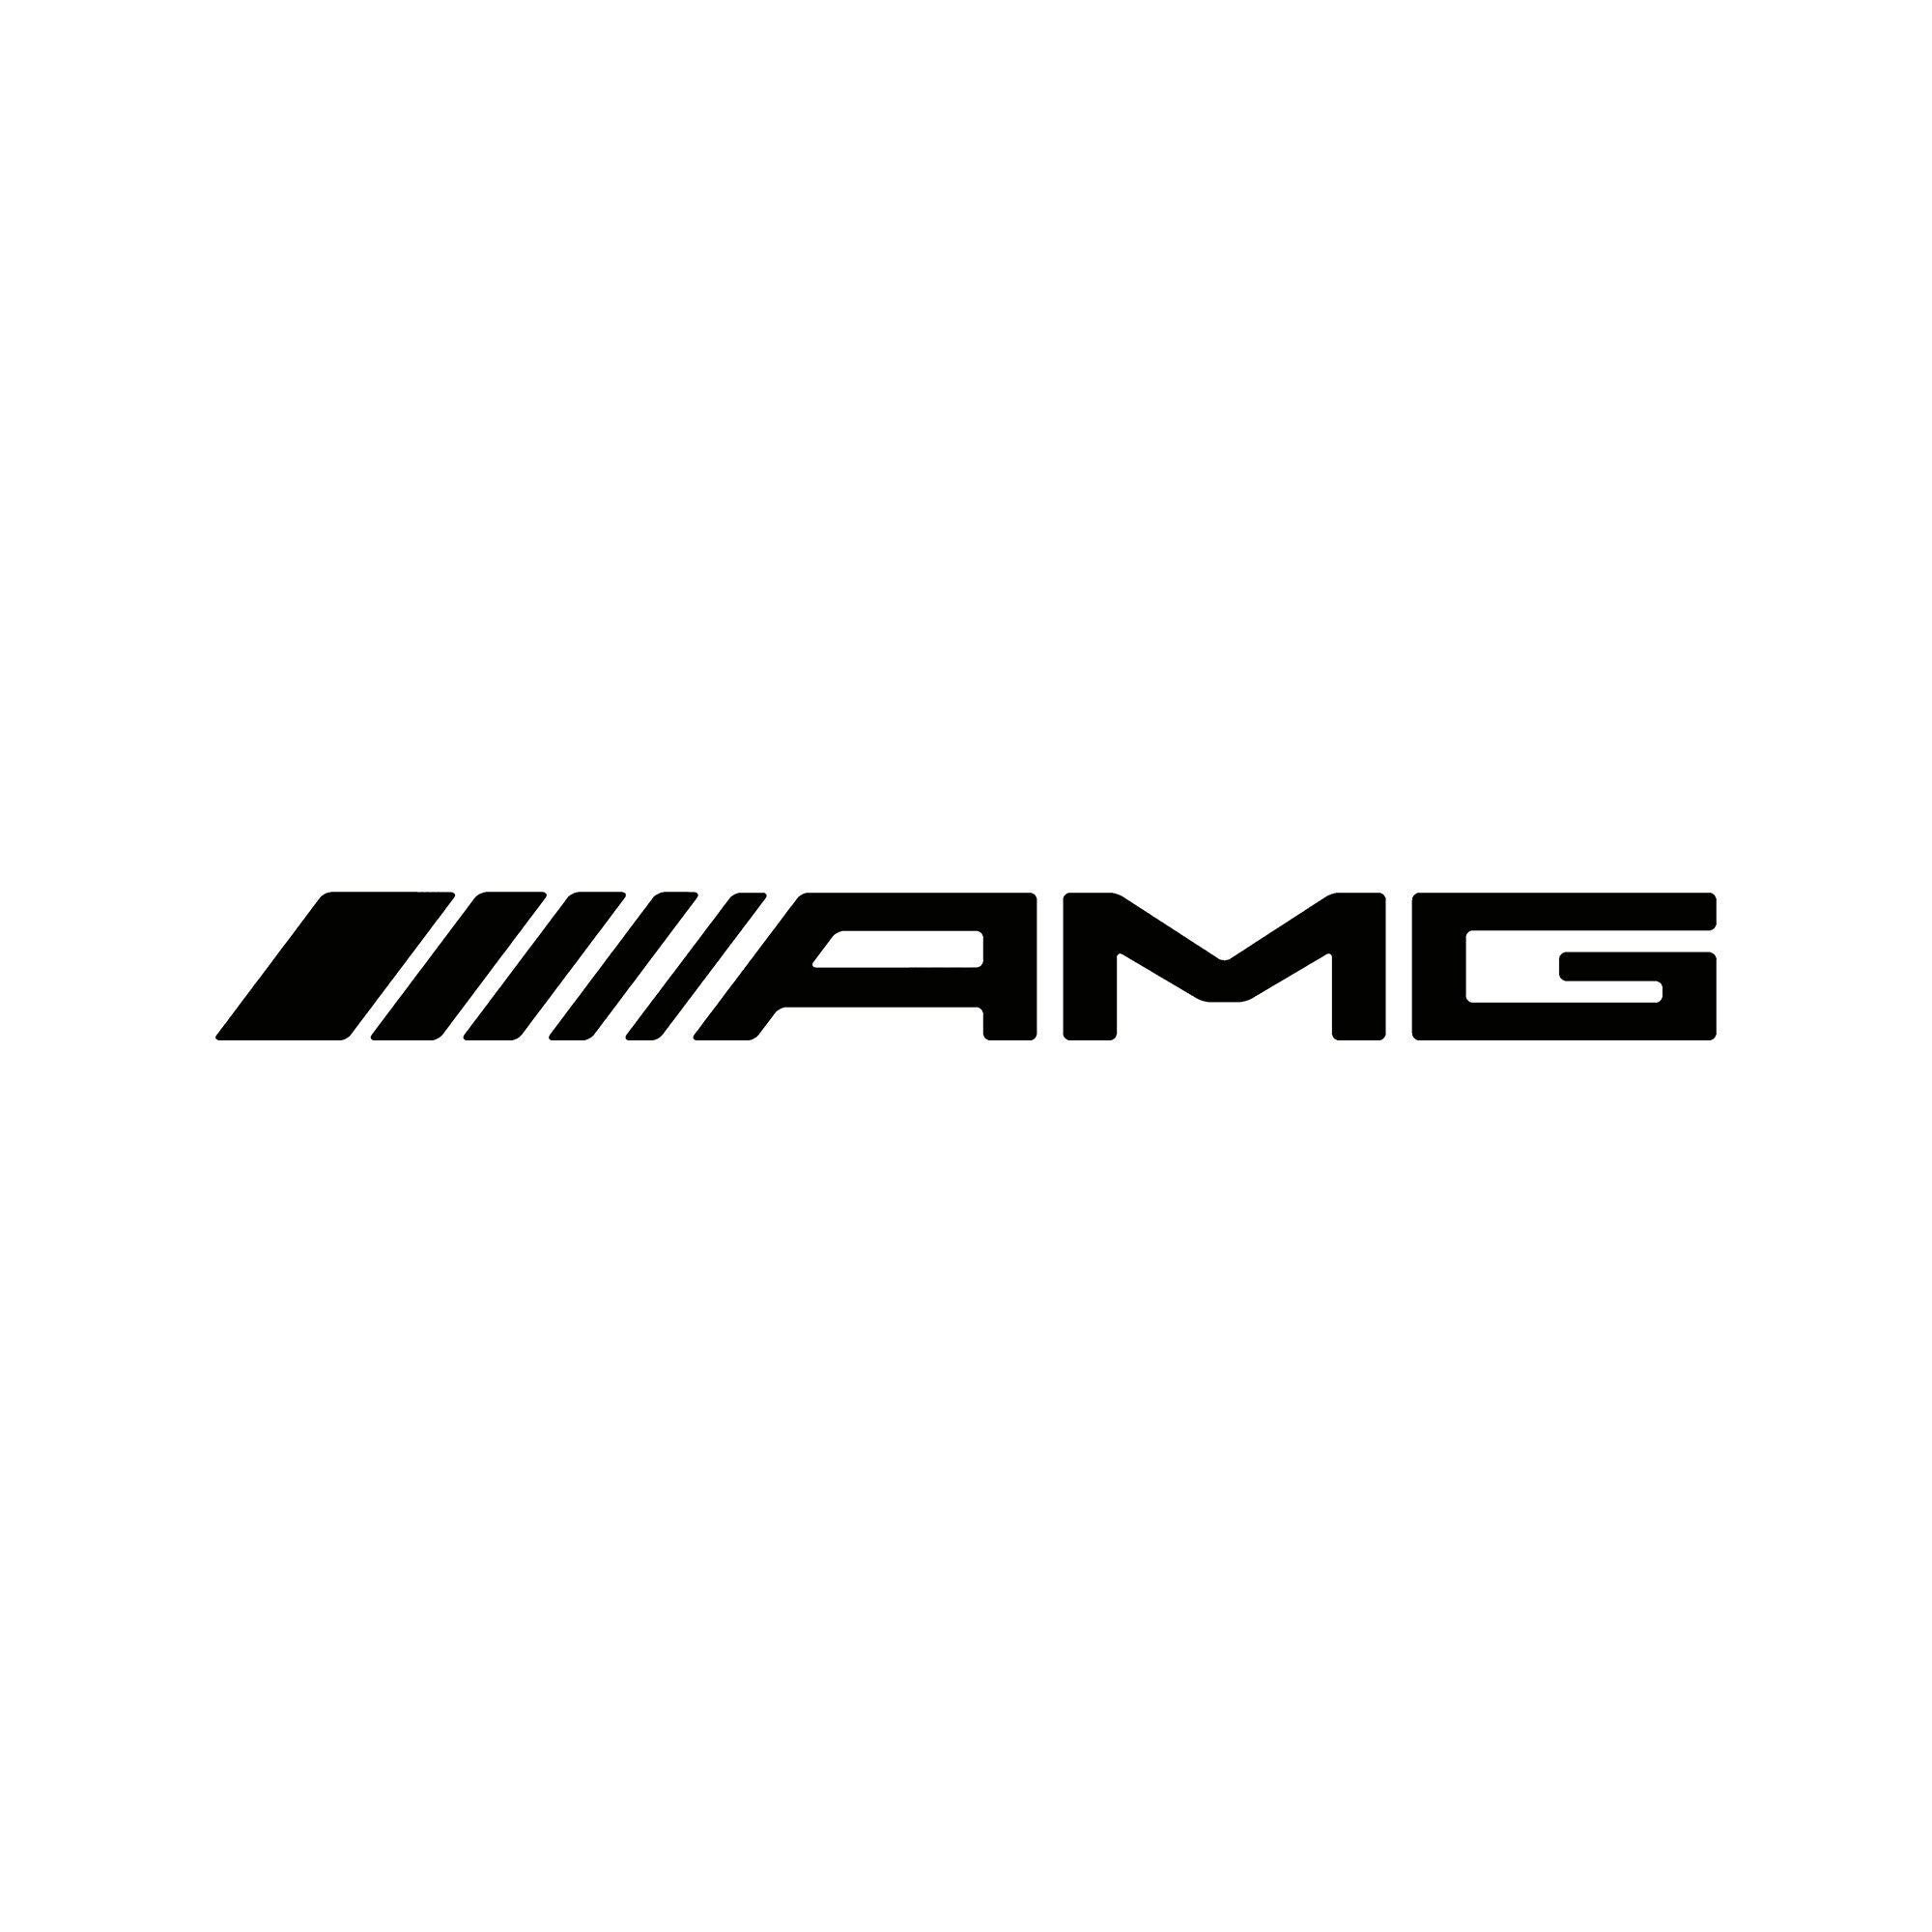 AMG' Sticker